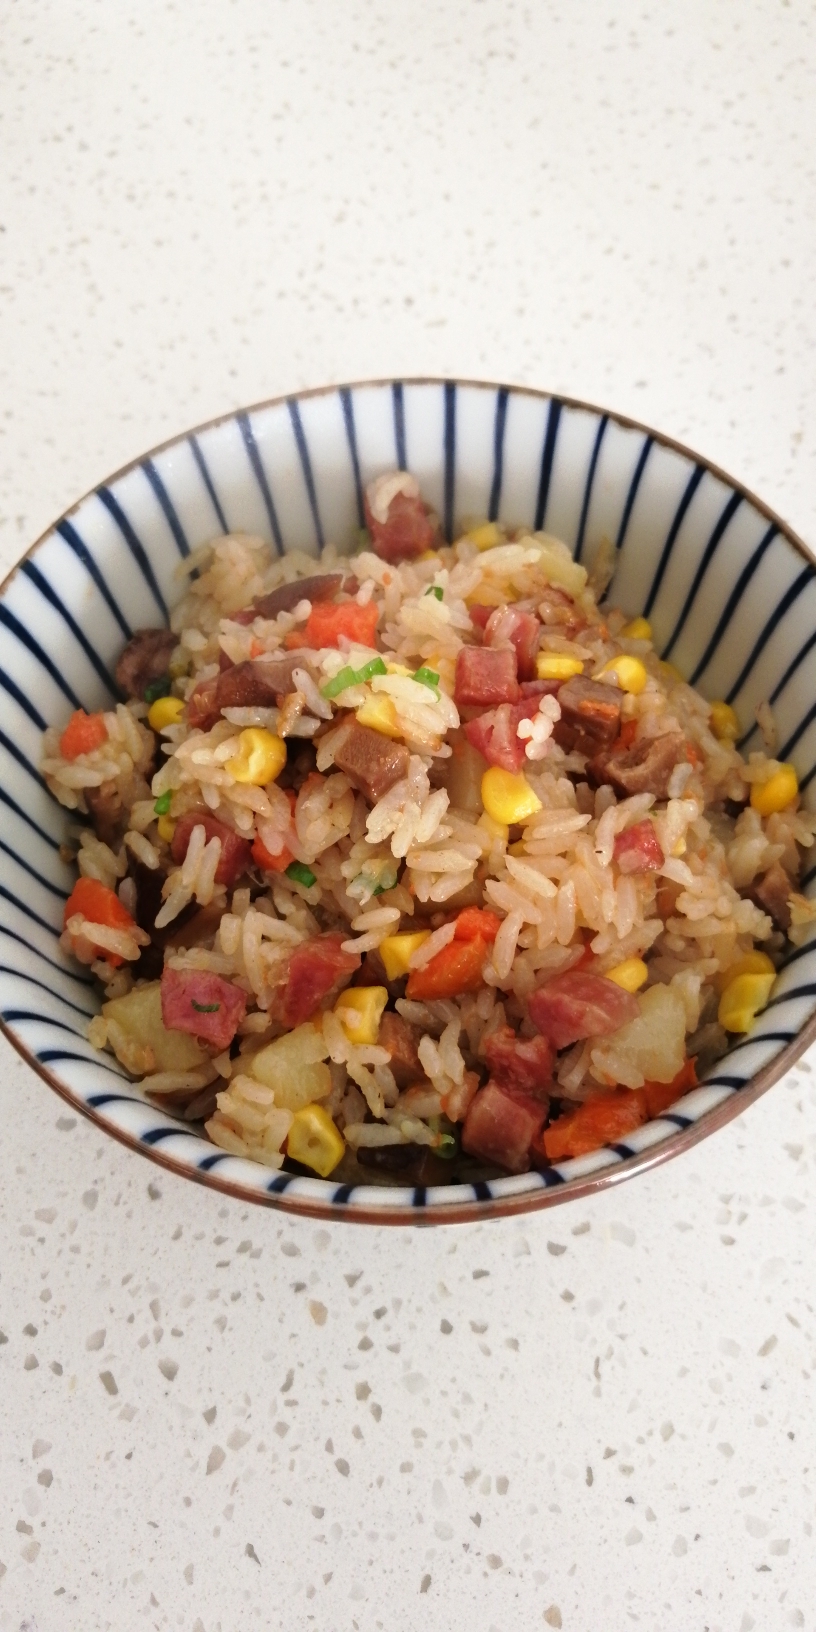 腊肠焖米饭